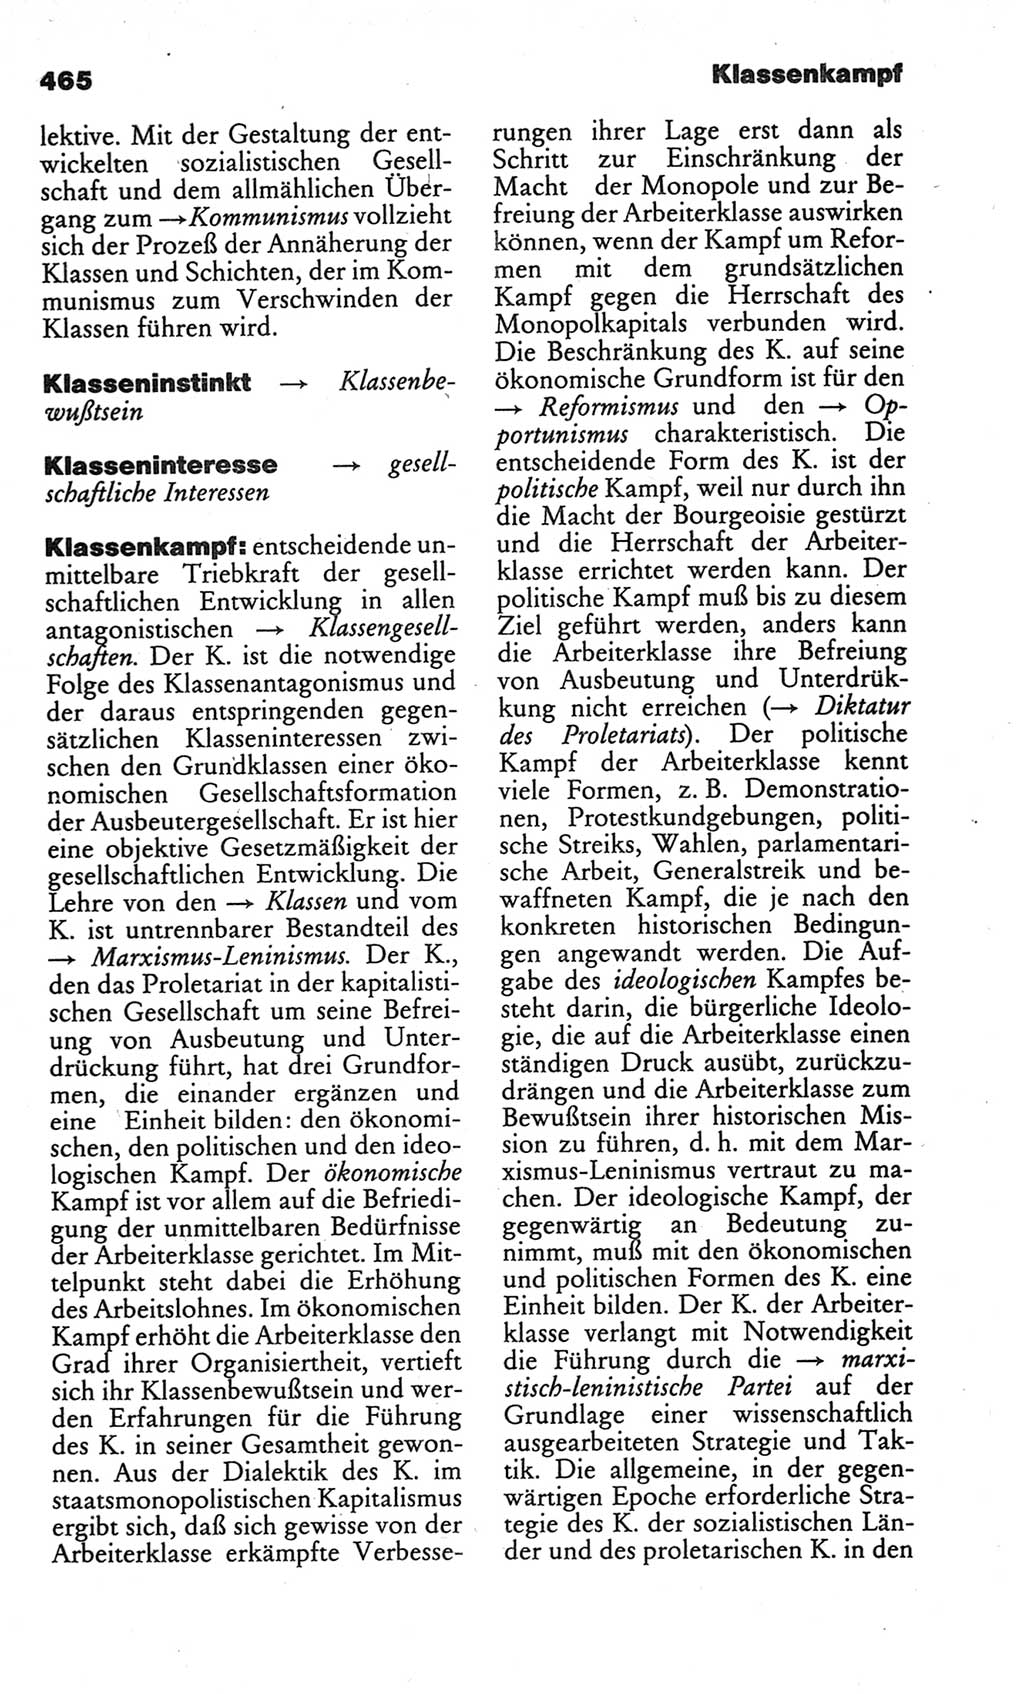 Kleines politisches Wörterbuch [Deutsche Demokratische Republik (DDR)] 1986, Seite 465 (Kl. pol. Wb. DDR 1986, S. 465)